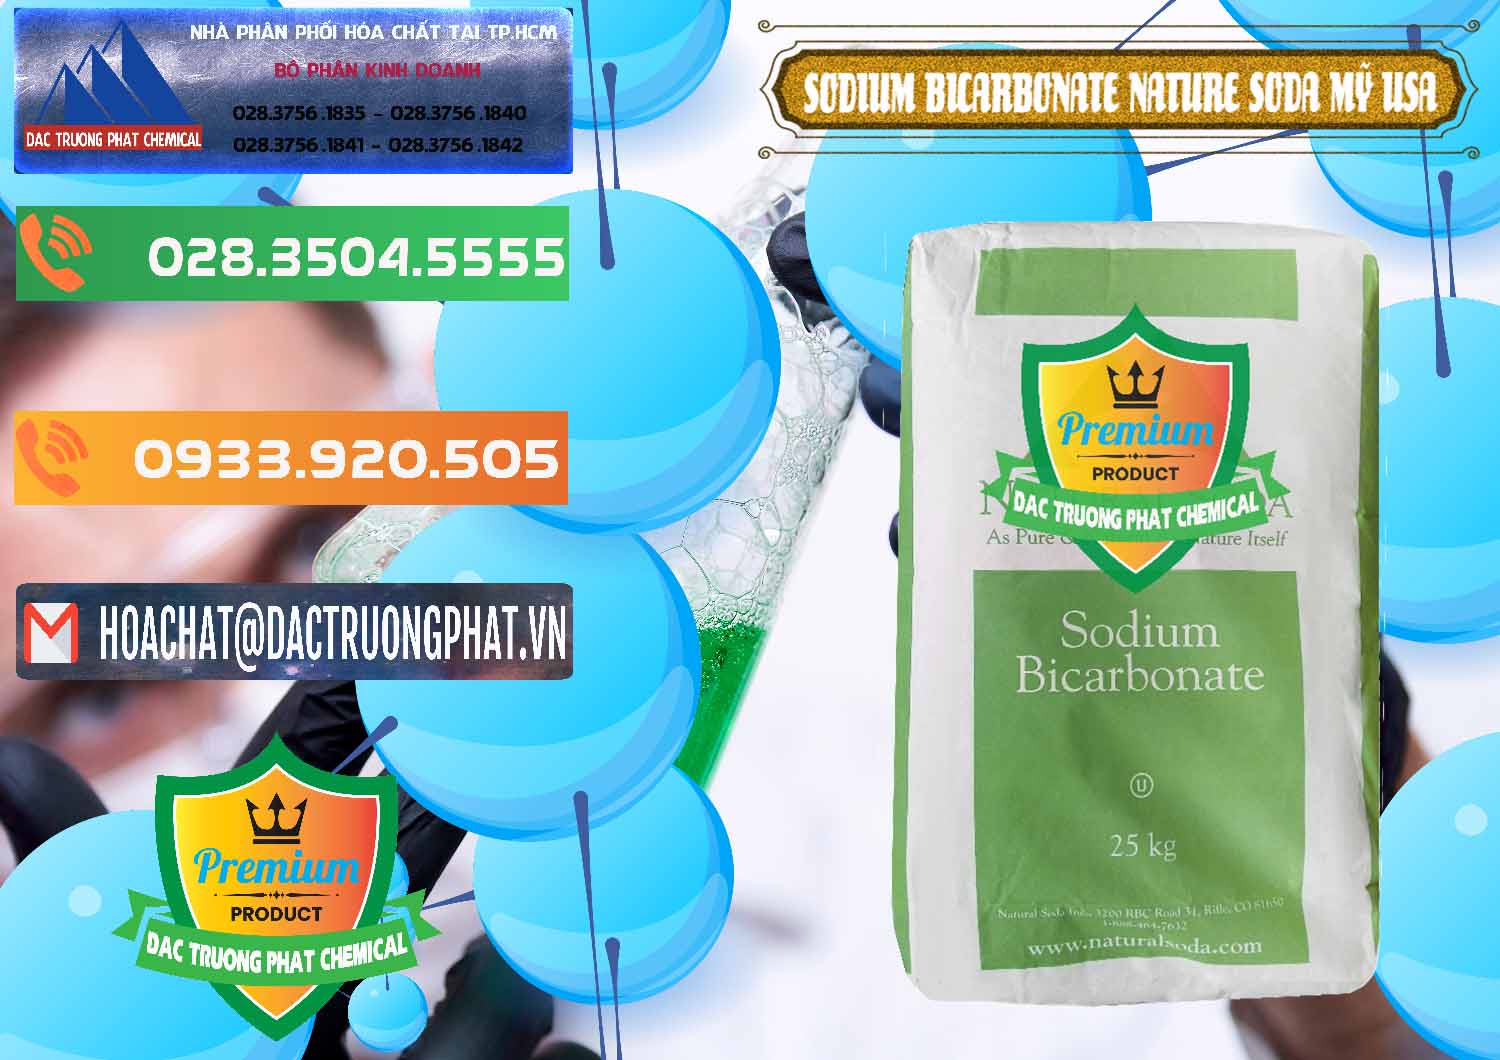 Đơn vị nhập khẩu _ bán Sodium Bicarbonate – Bicar NaHCO3 Food Grade Nature Soda Mỹ USA - 0256 - Cty phân phối ( nhập khẩu ) hóa chất tại TP.HCM - hoachatxulynuoc.com.vn